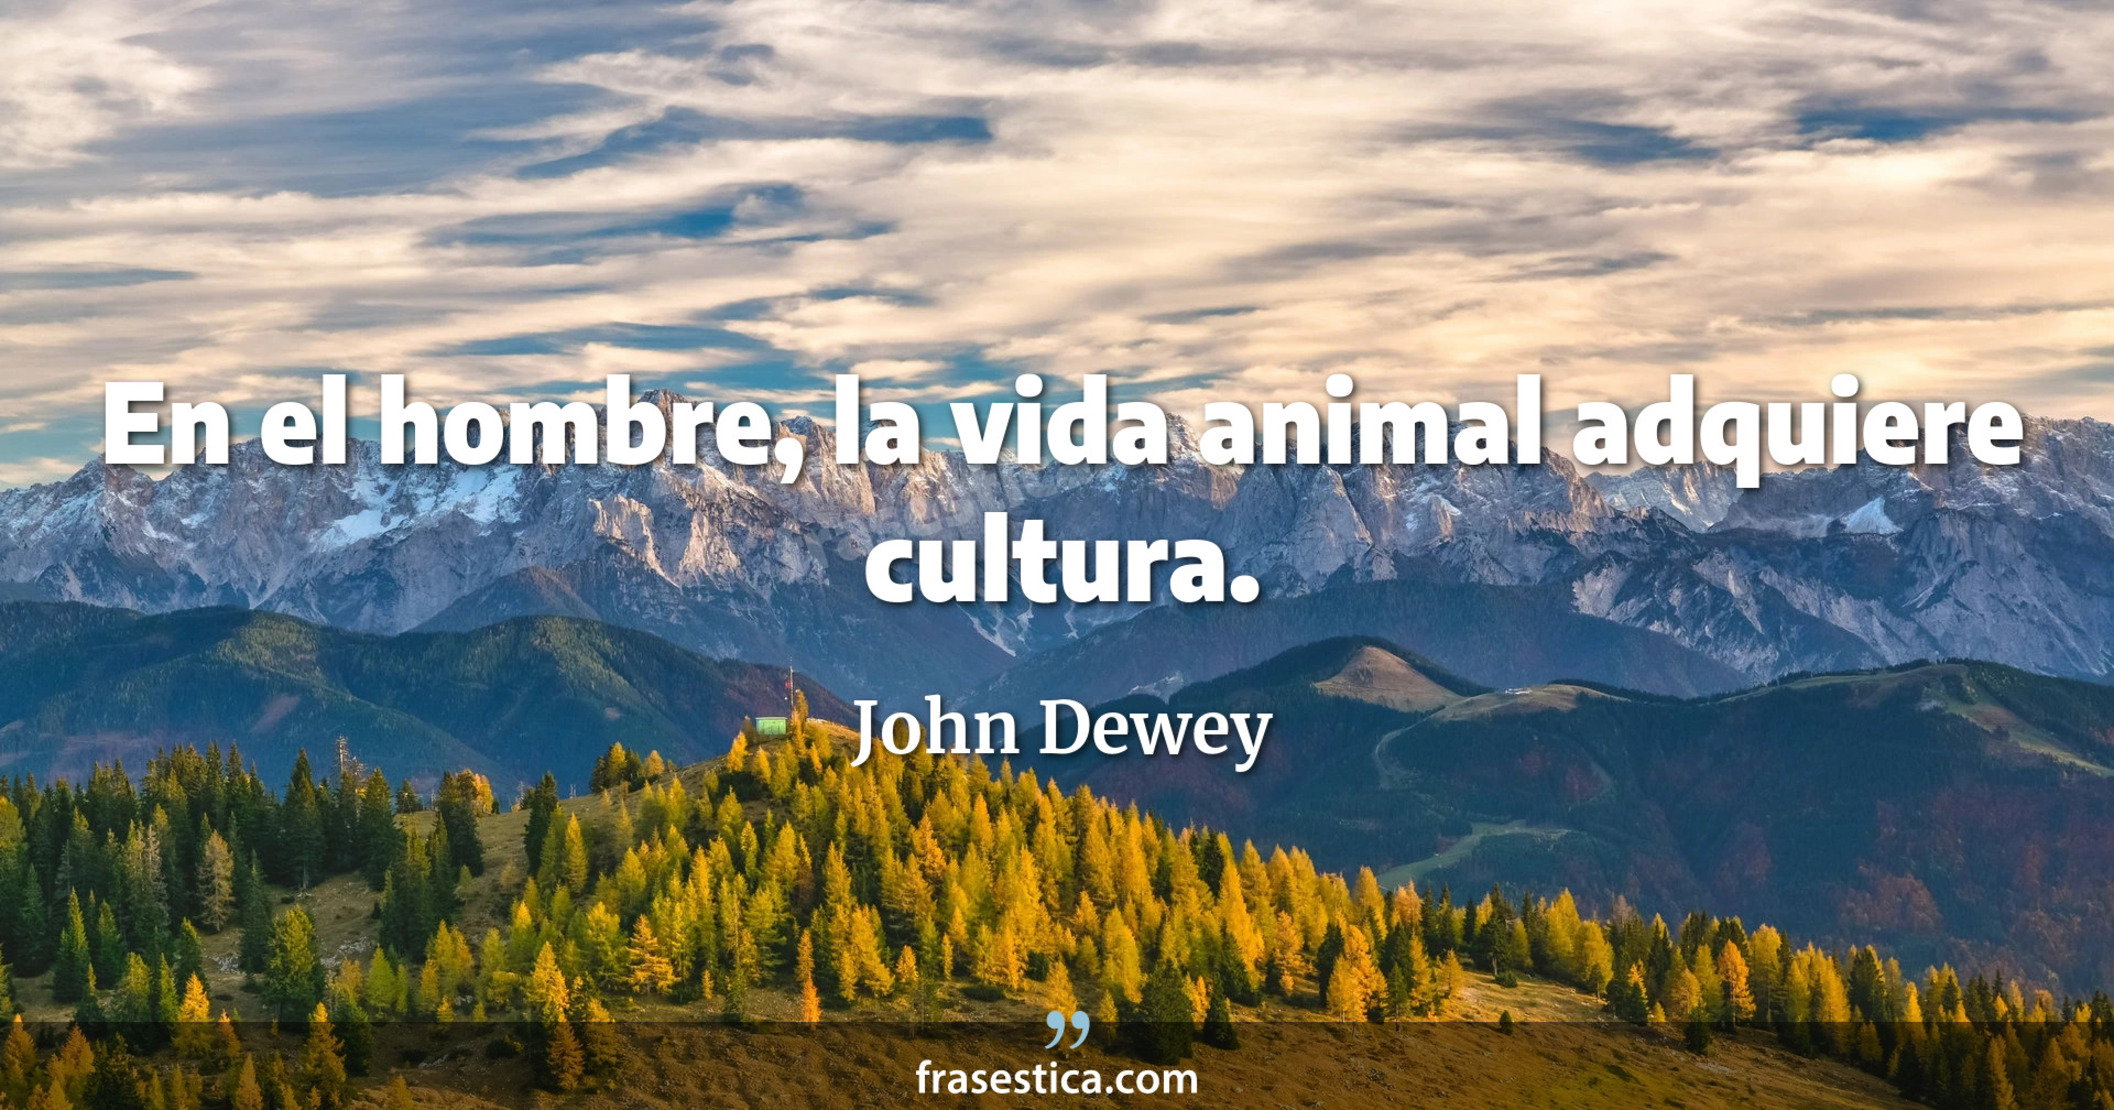 En el hombre, la vida animal adquiere cultura. - John Dewey